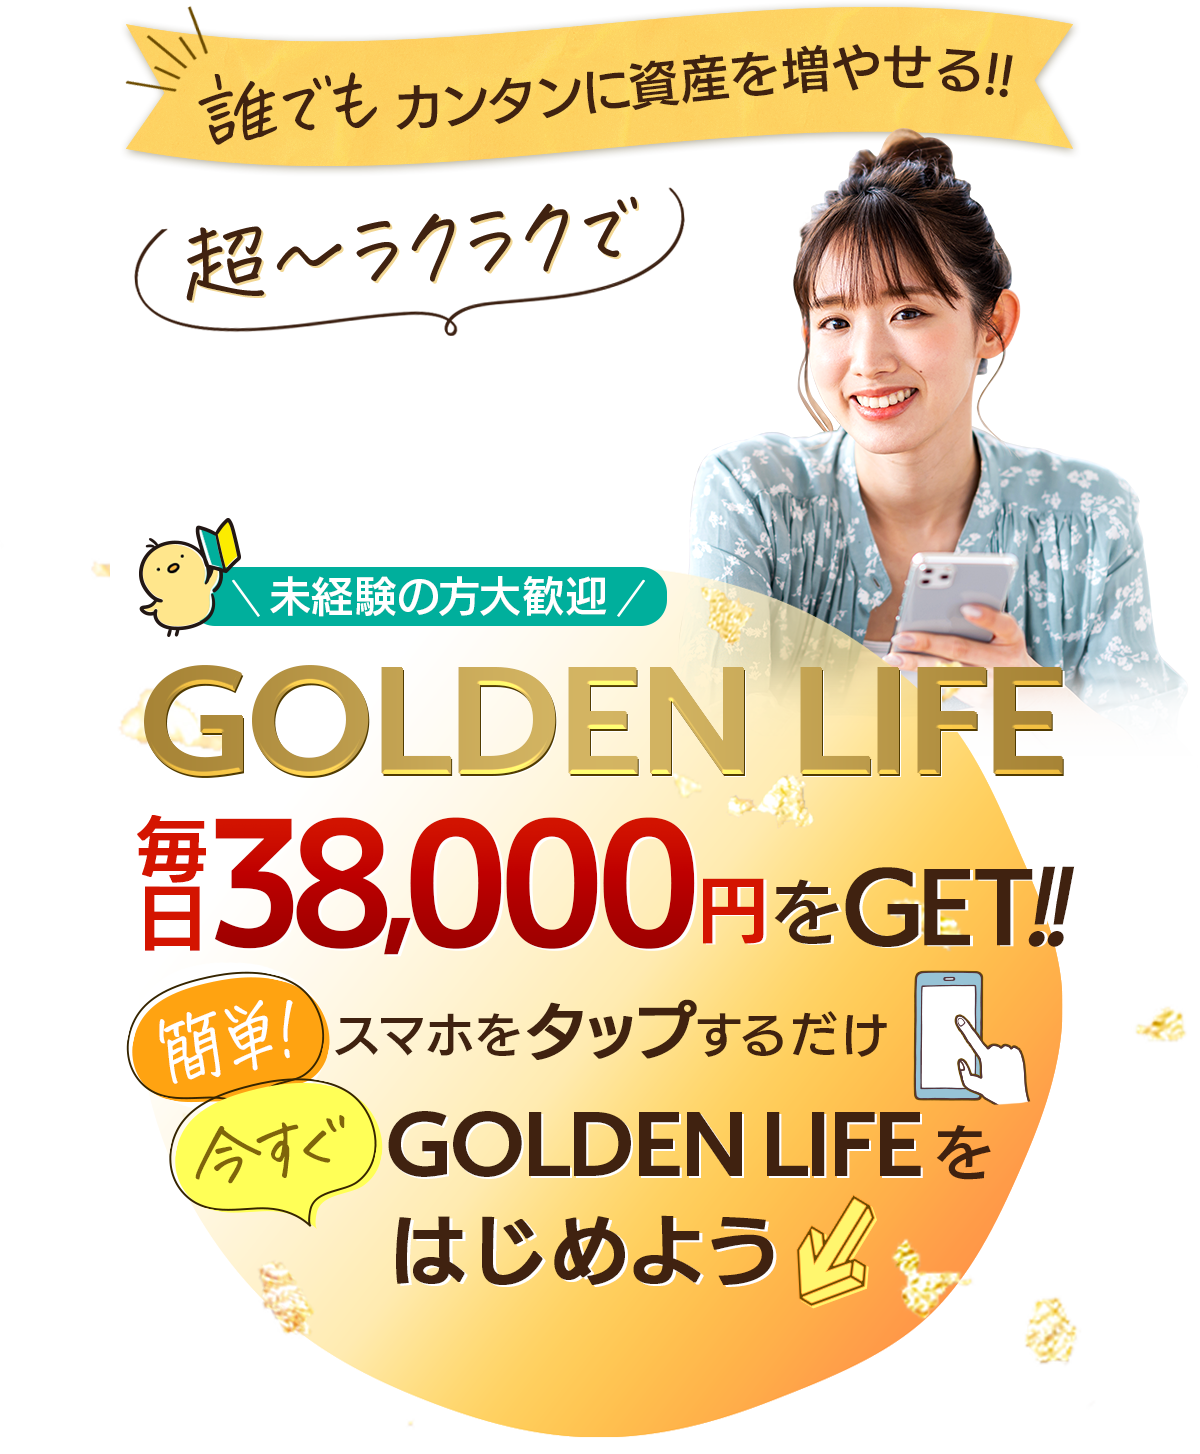 未経験の方大歓迎「GOLDEN LIFE」毎日38000円をGET!! 簡単!スマホをタップするだけ。今すぐGOLDEN LIFEをはじめよう。